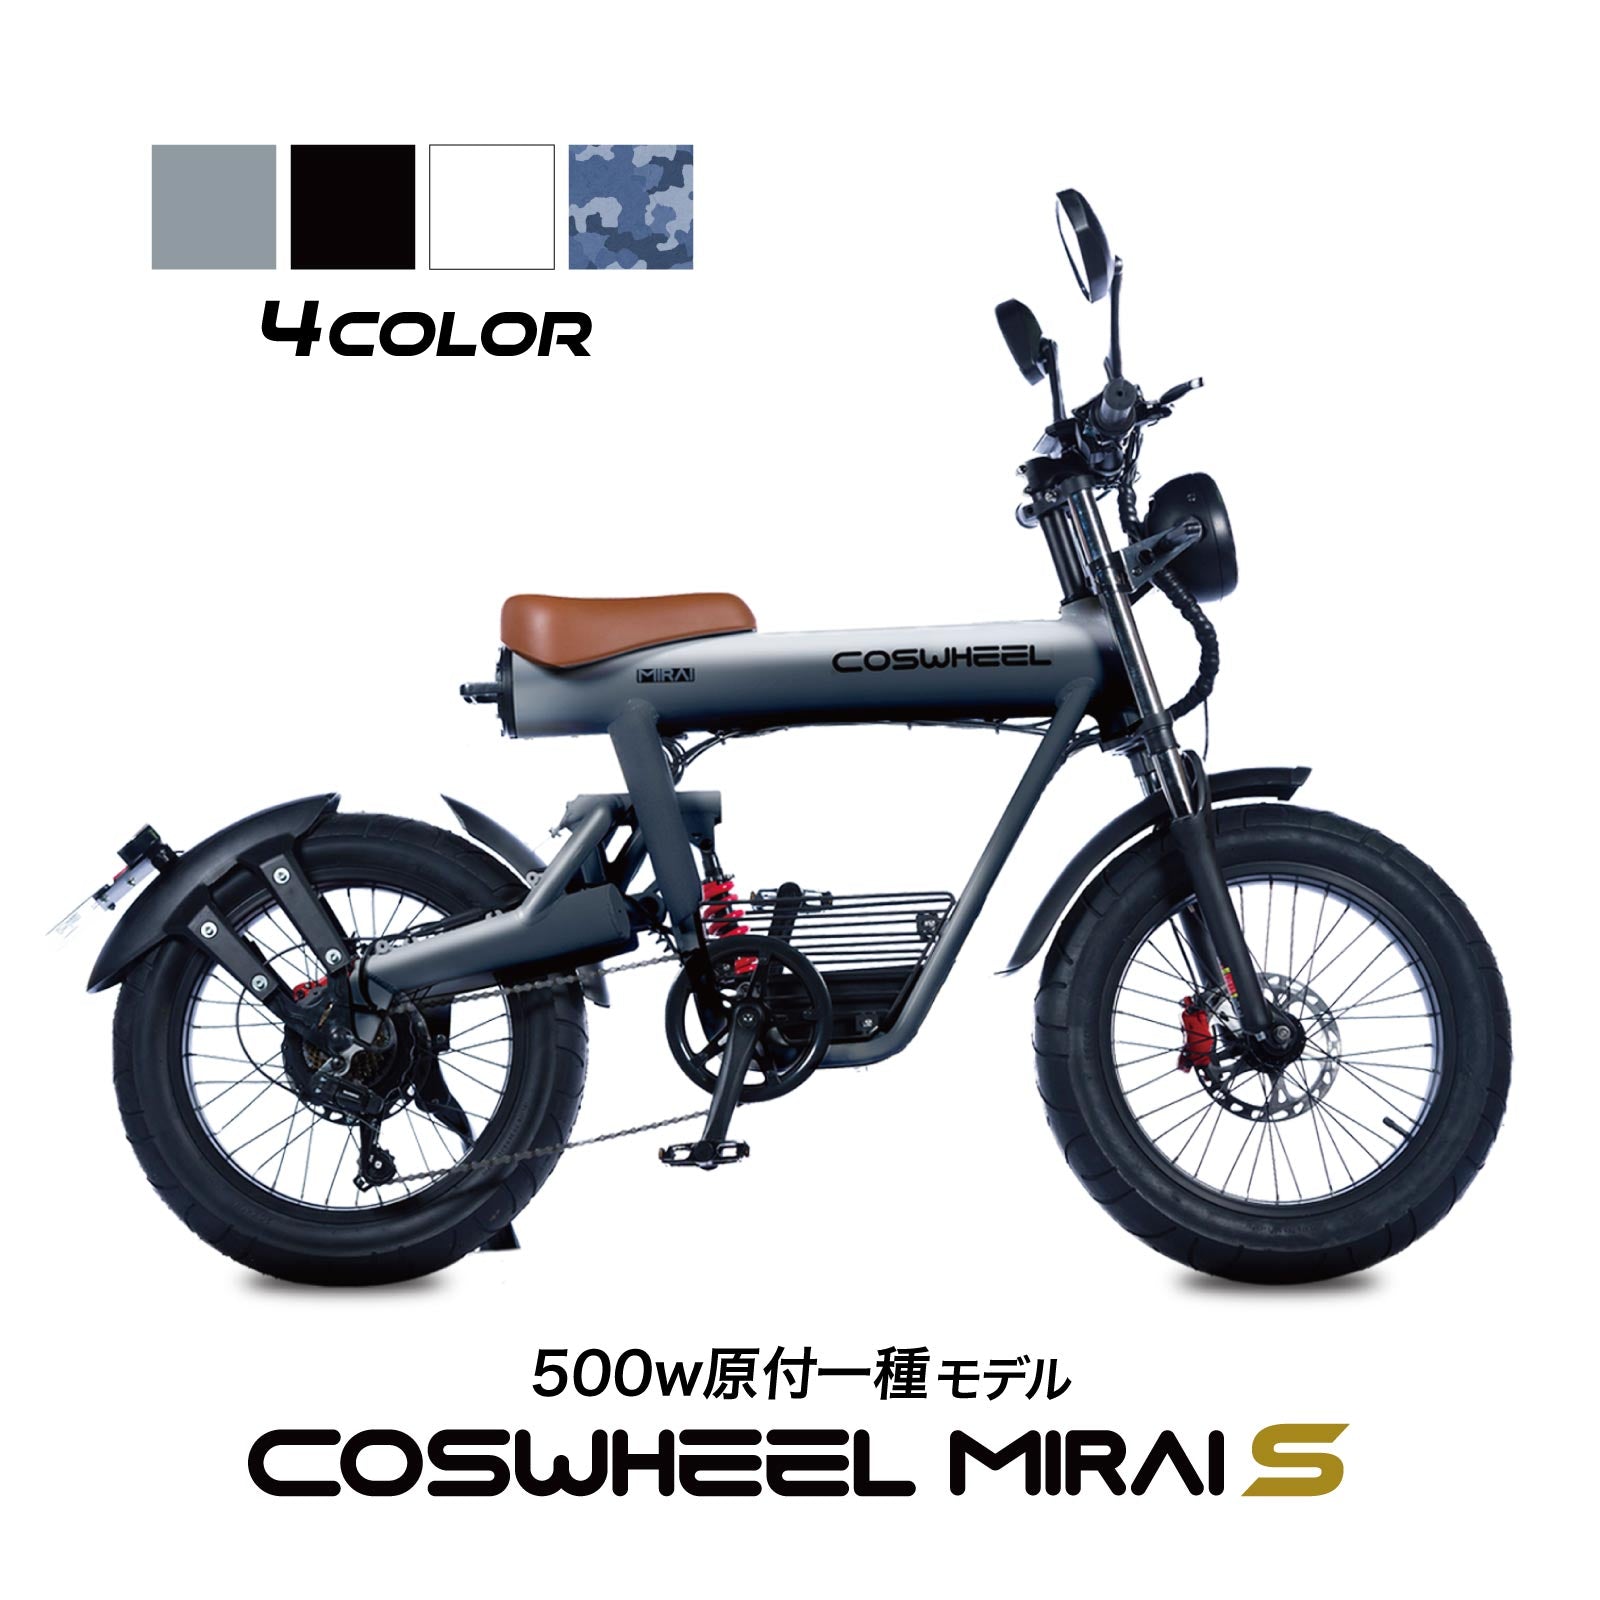 電動バイク COSWHEEL MIRAI S 500w 原付一種モデル / 公道走行可